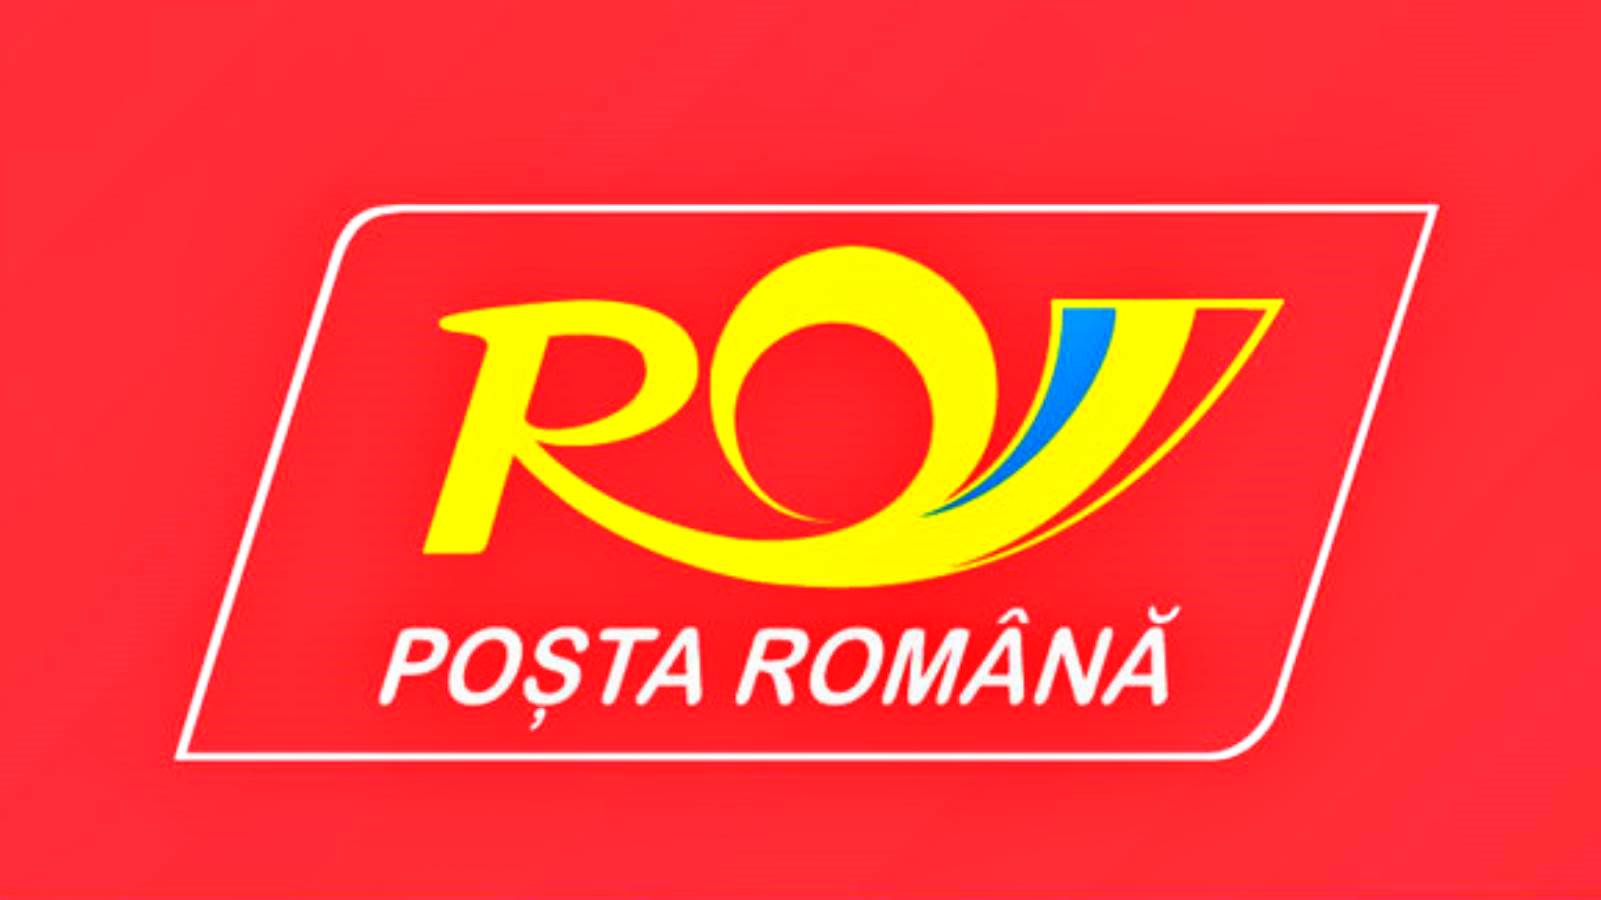 Posta Roumanie annonce des changements importants aux passeports roumains